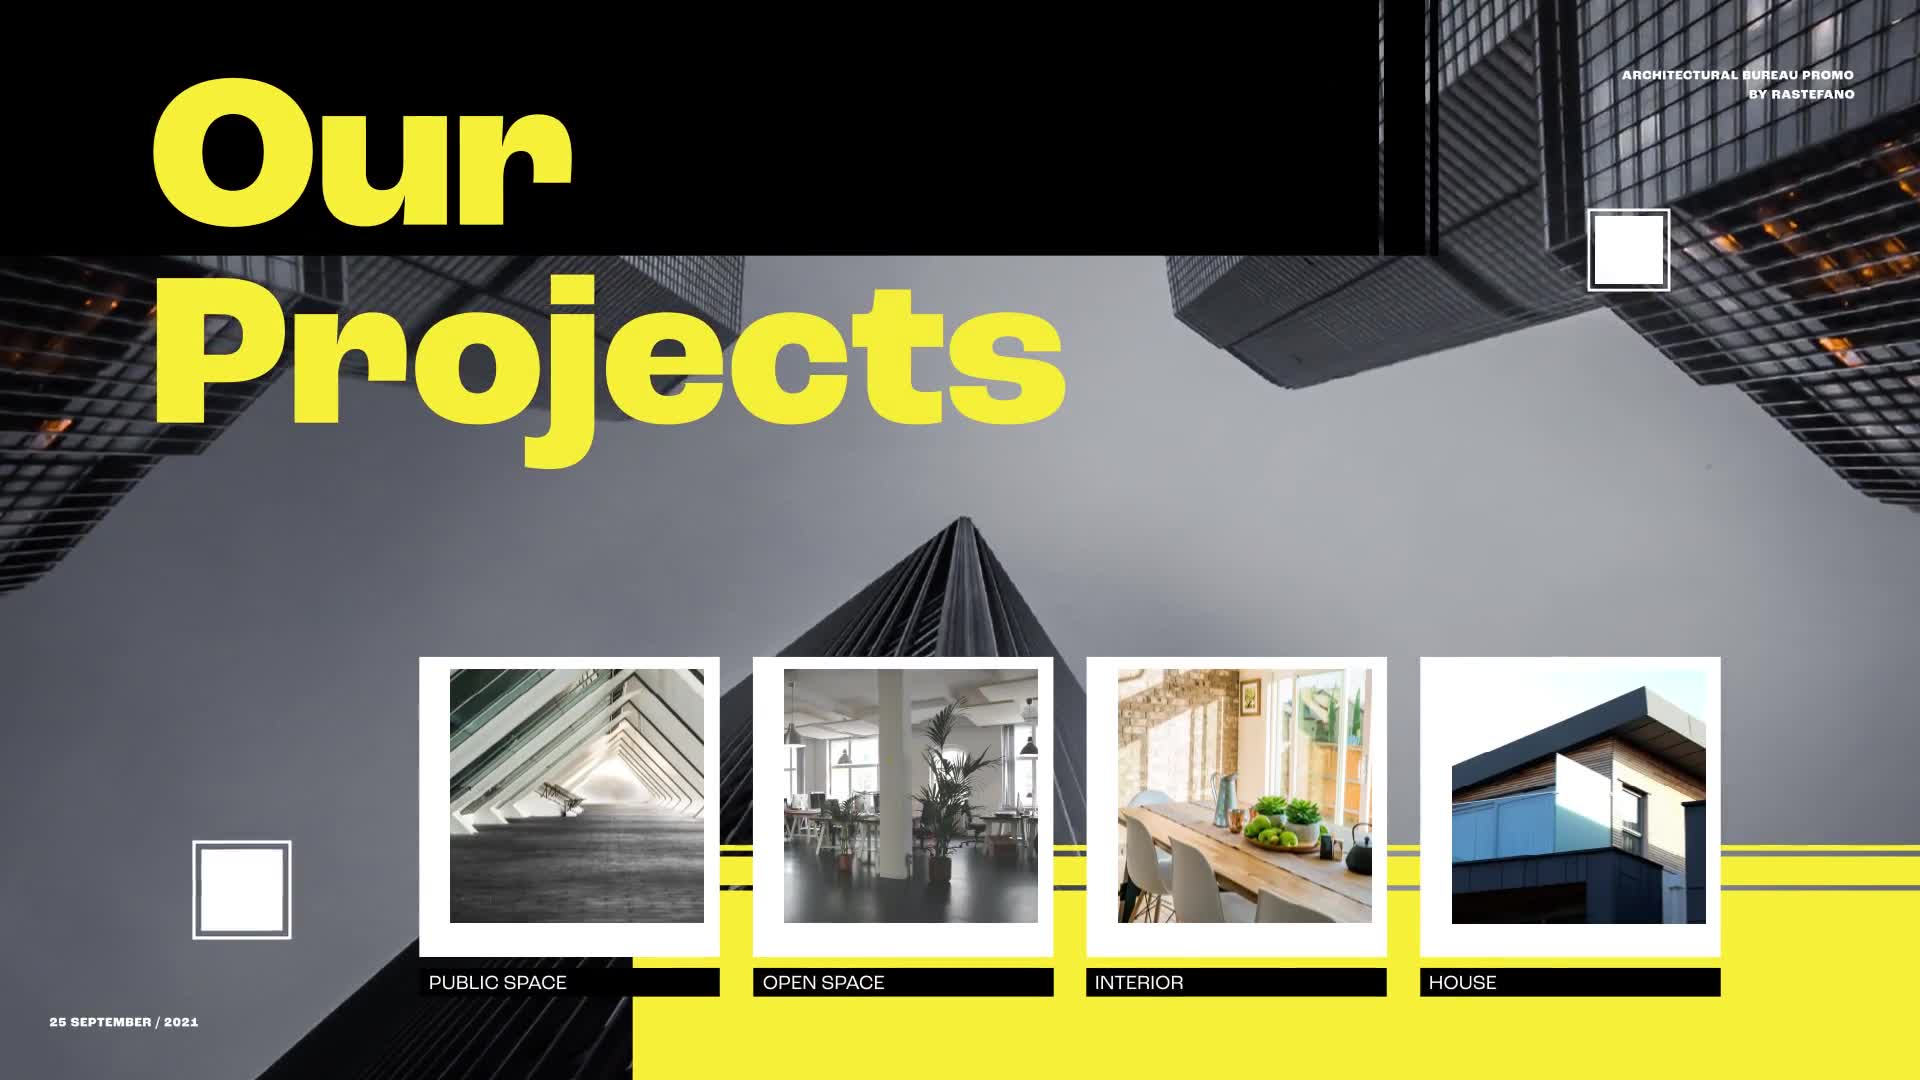 Architecture Bureau Promo Openers 3 in 1 Videohive 38109559 Premiere Pro Image 12